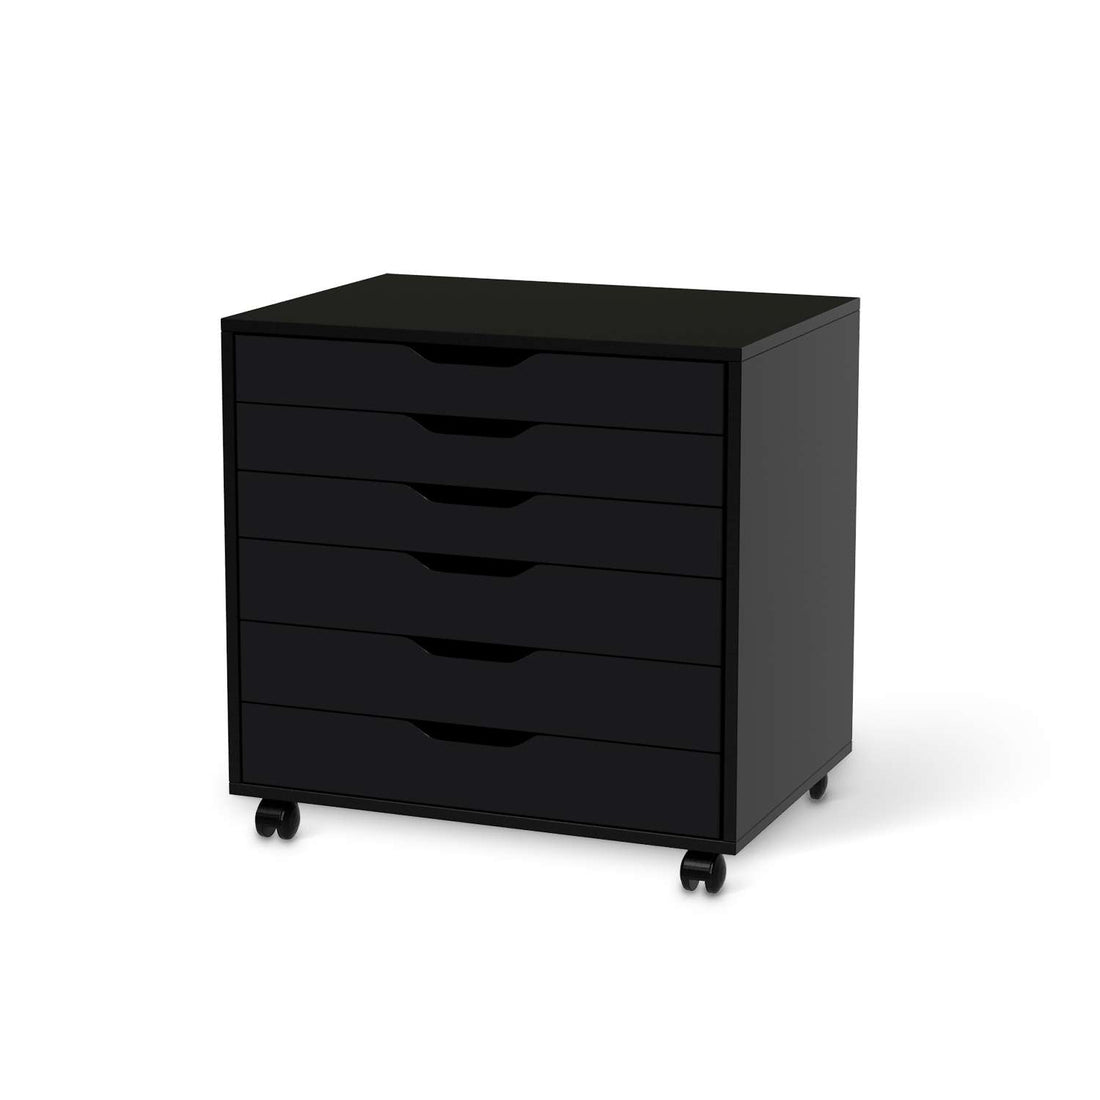 Möbelfolie Schwarz - IKEA Alex Rollcontainer 6 Schubladen - schwarz